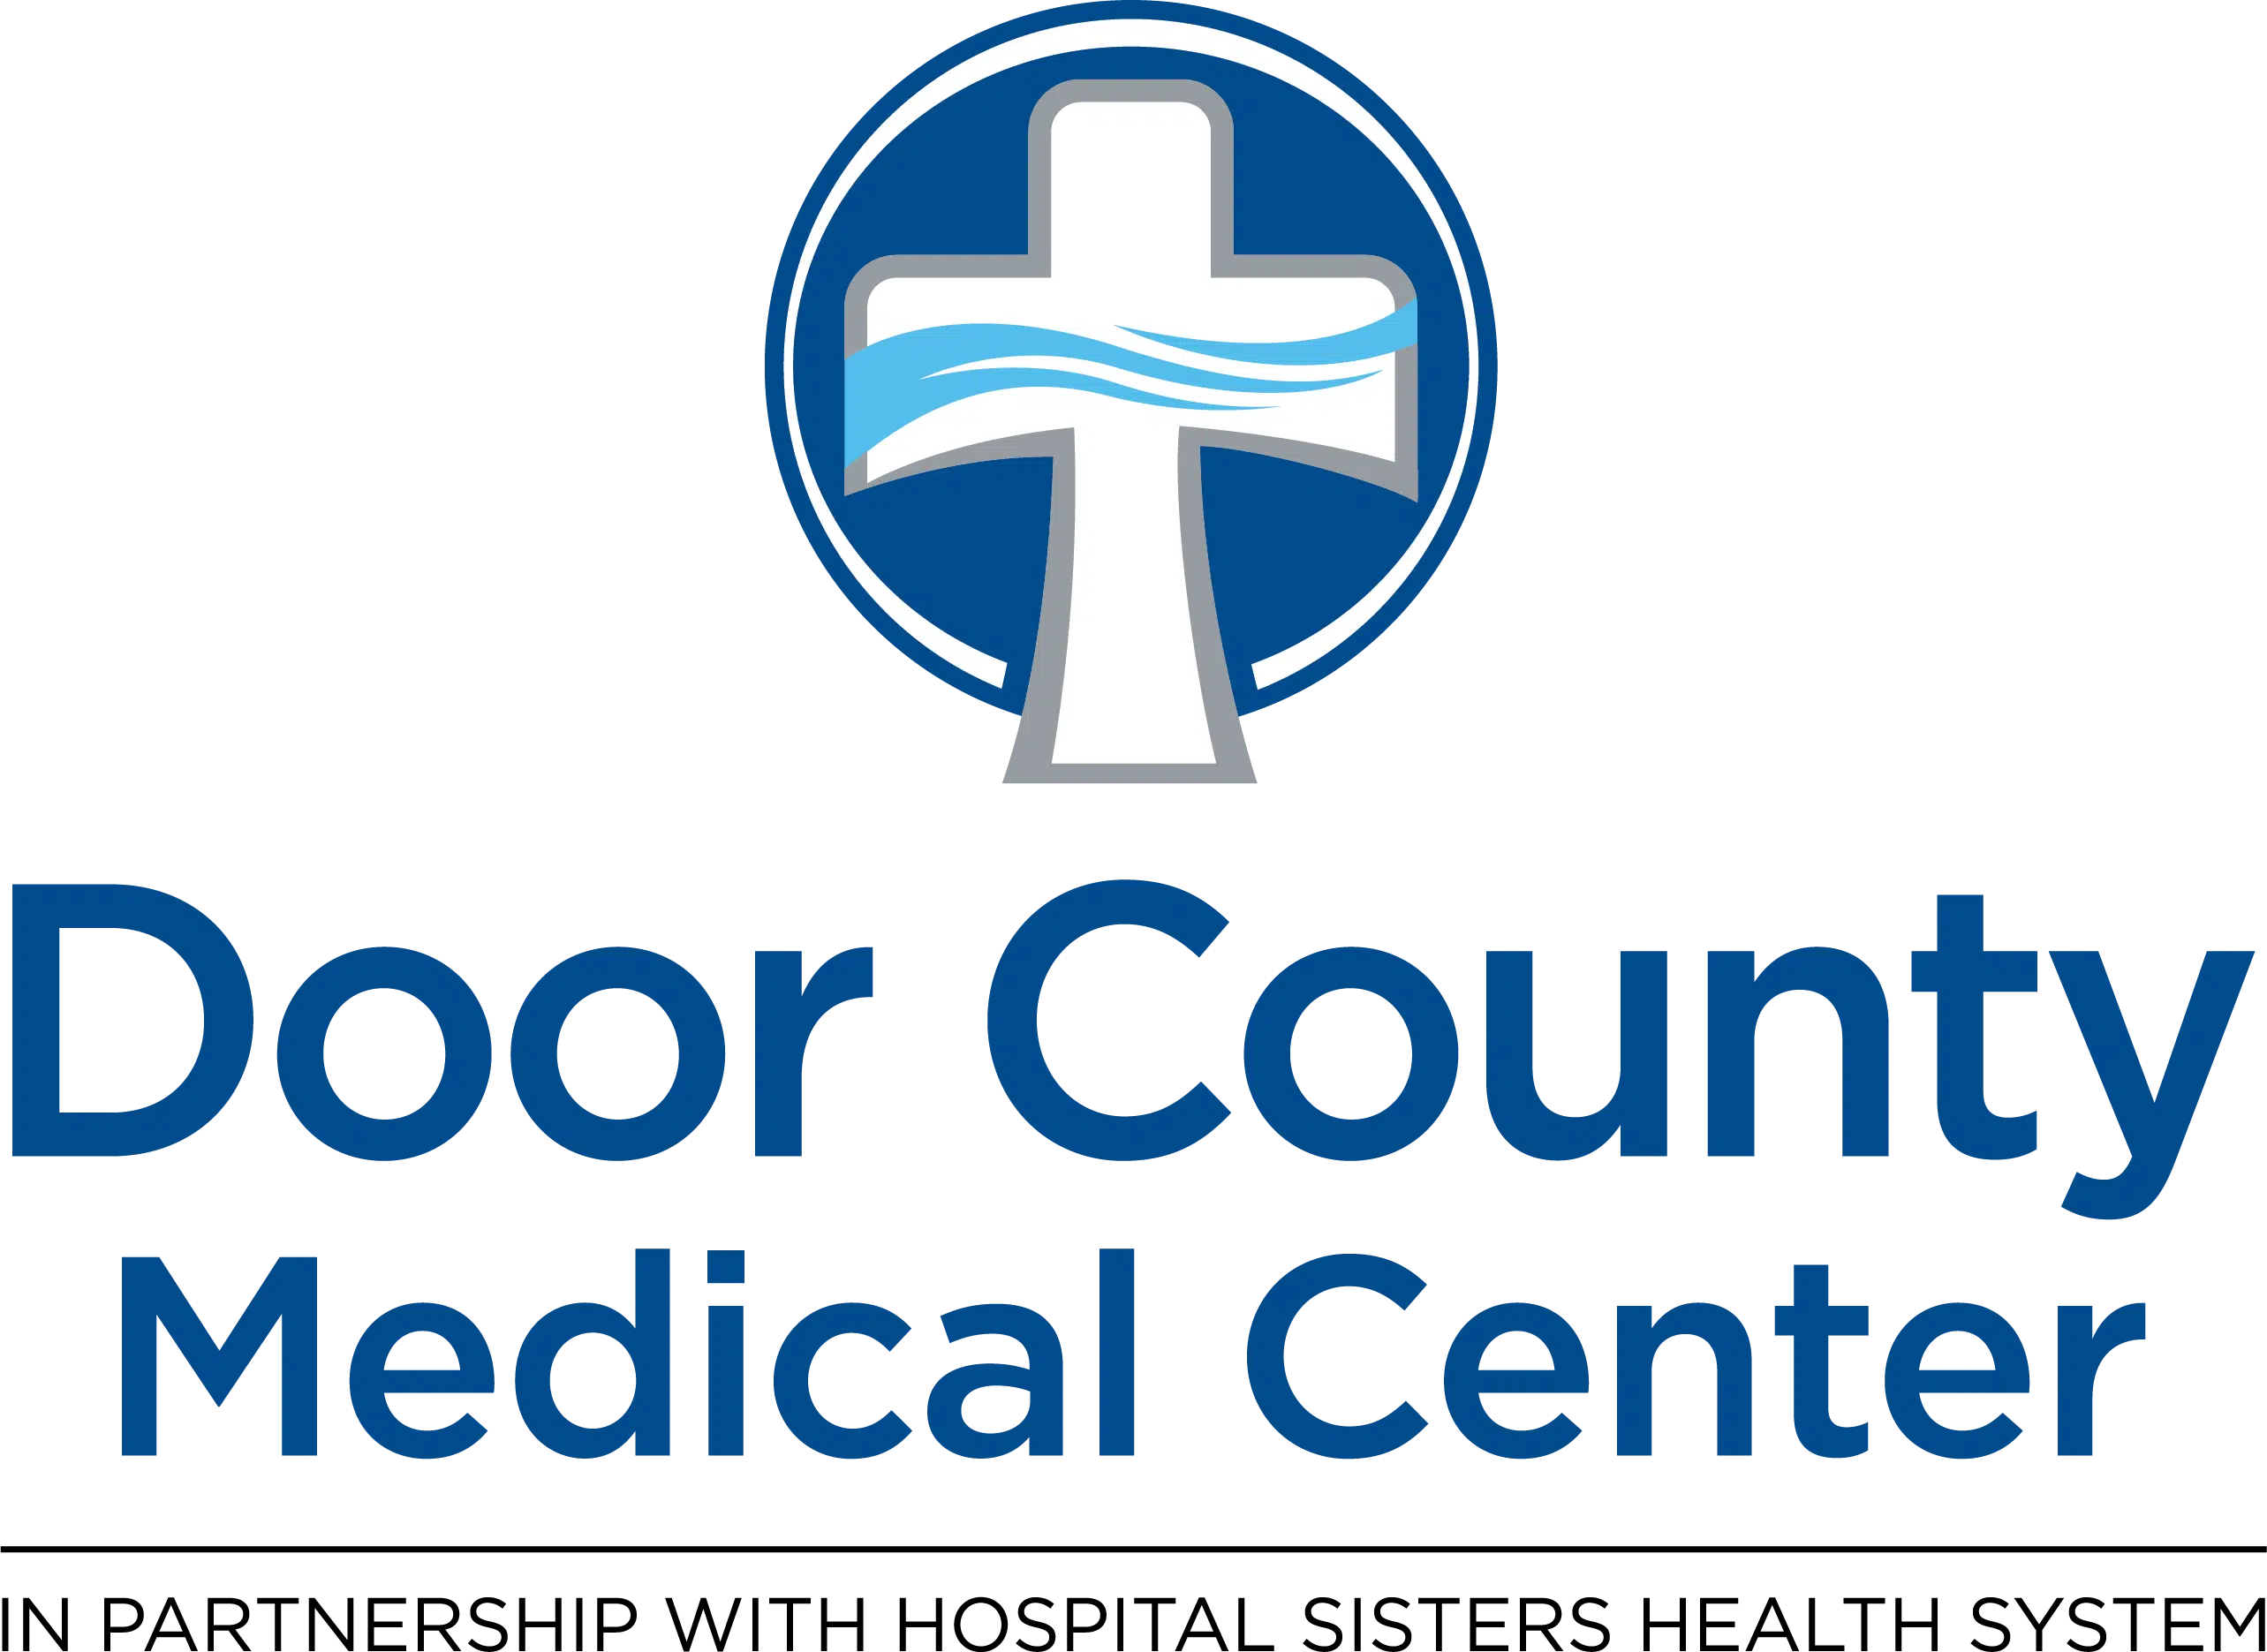 Door County Medical Center